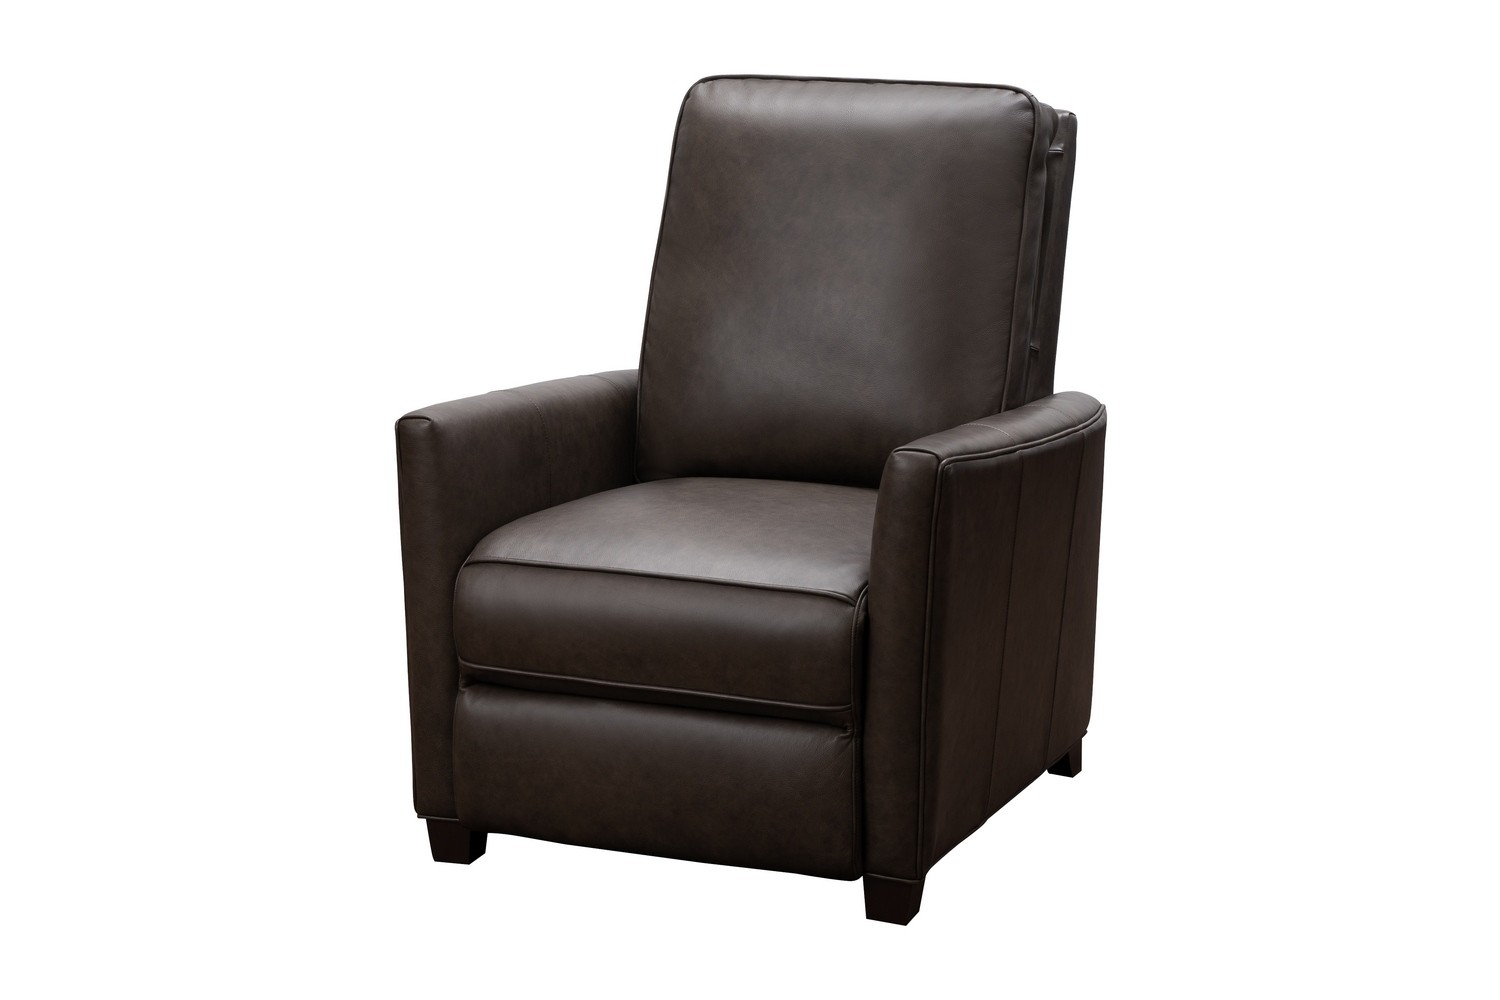 Barcalounger Shane Power Recliner Chair - Bennington Hazelnut/All Leather